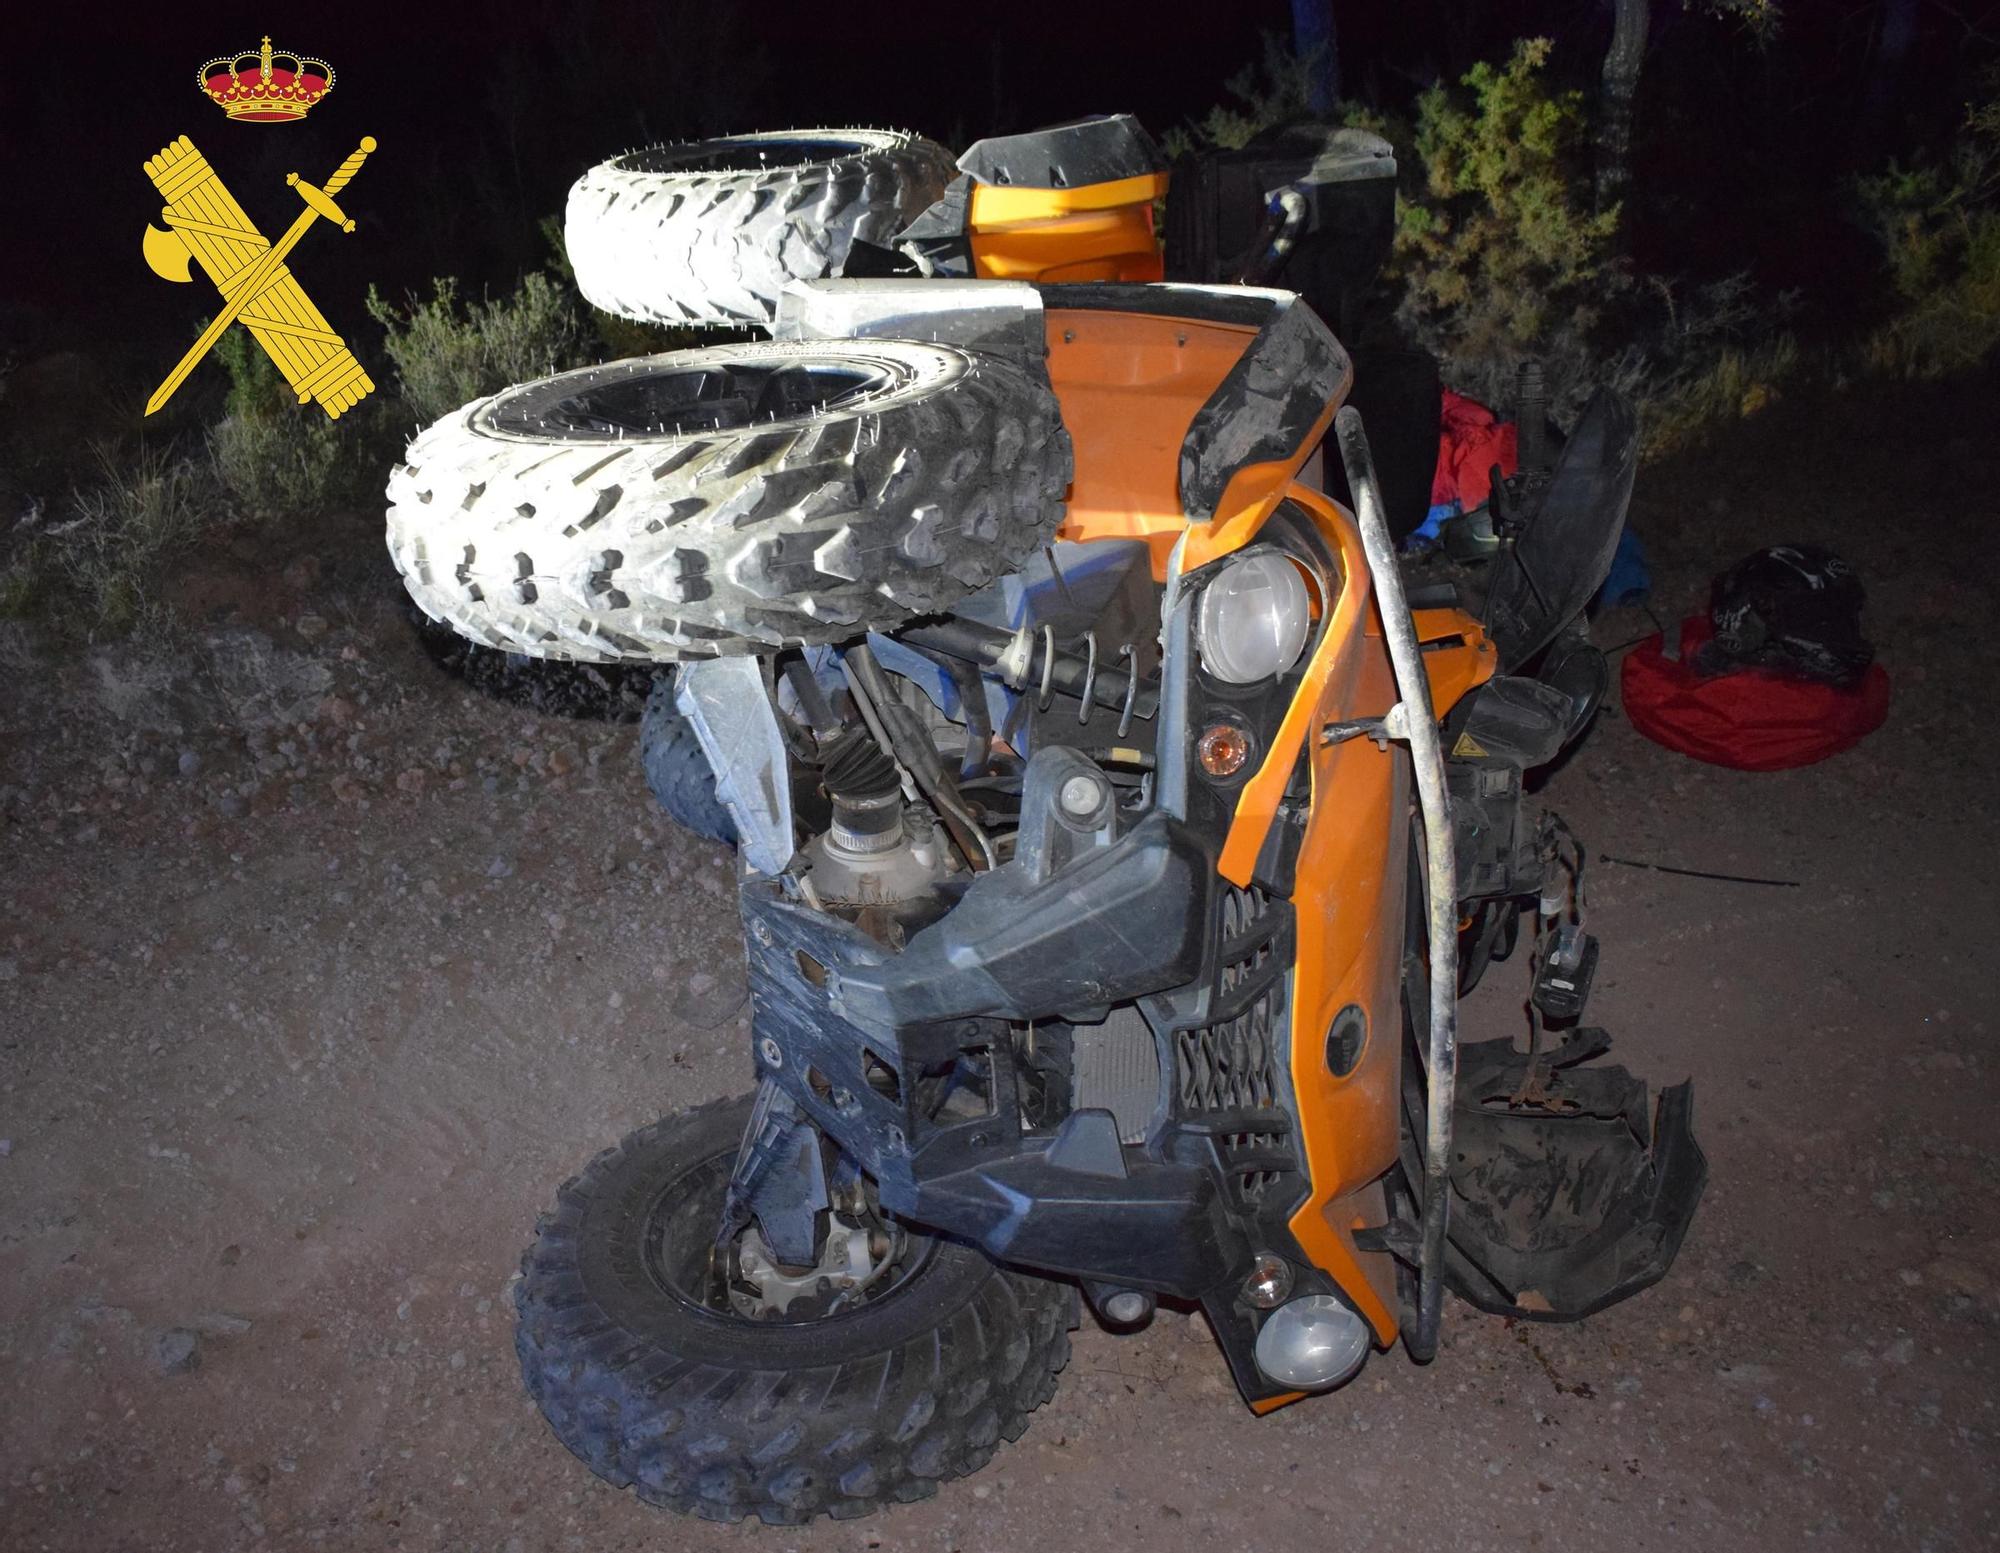 Así quedó el quad accidentado en San Agustín (Teruel)